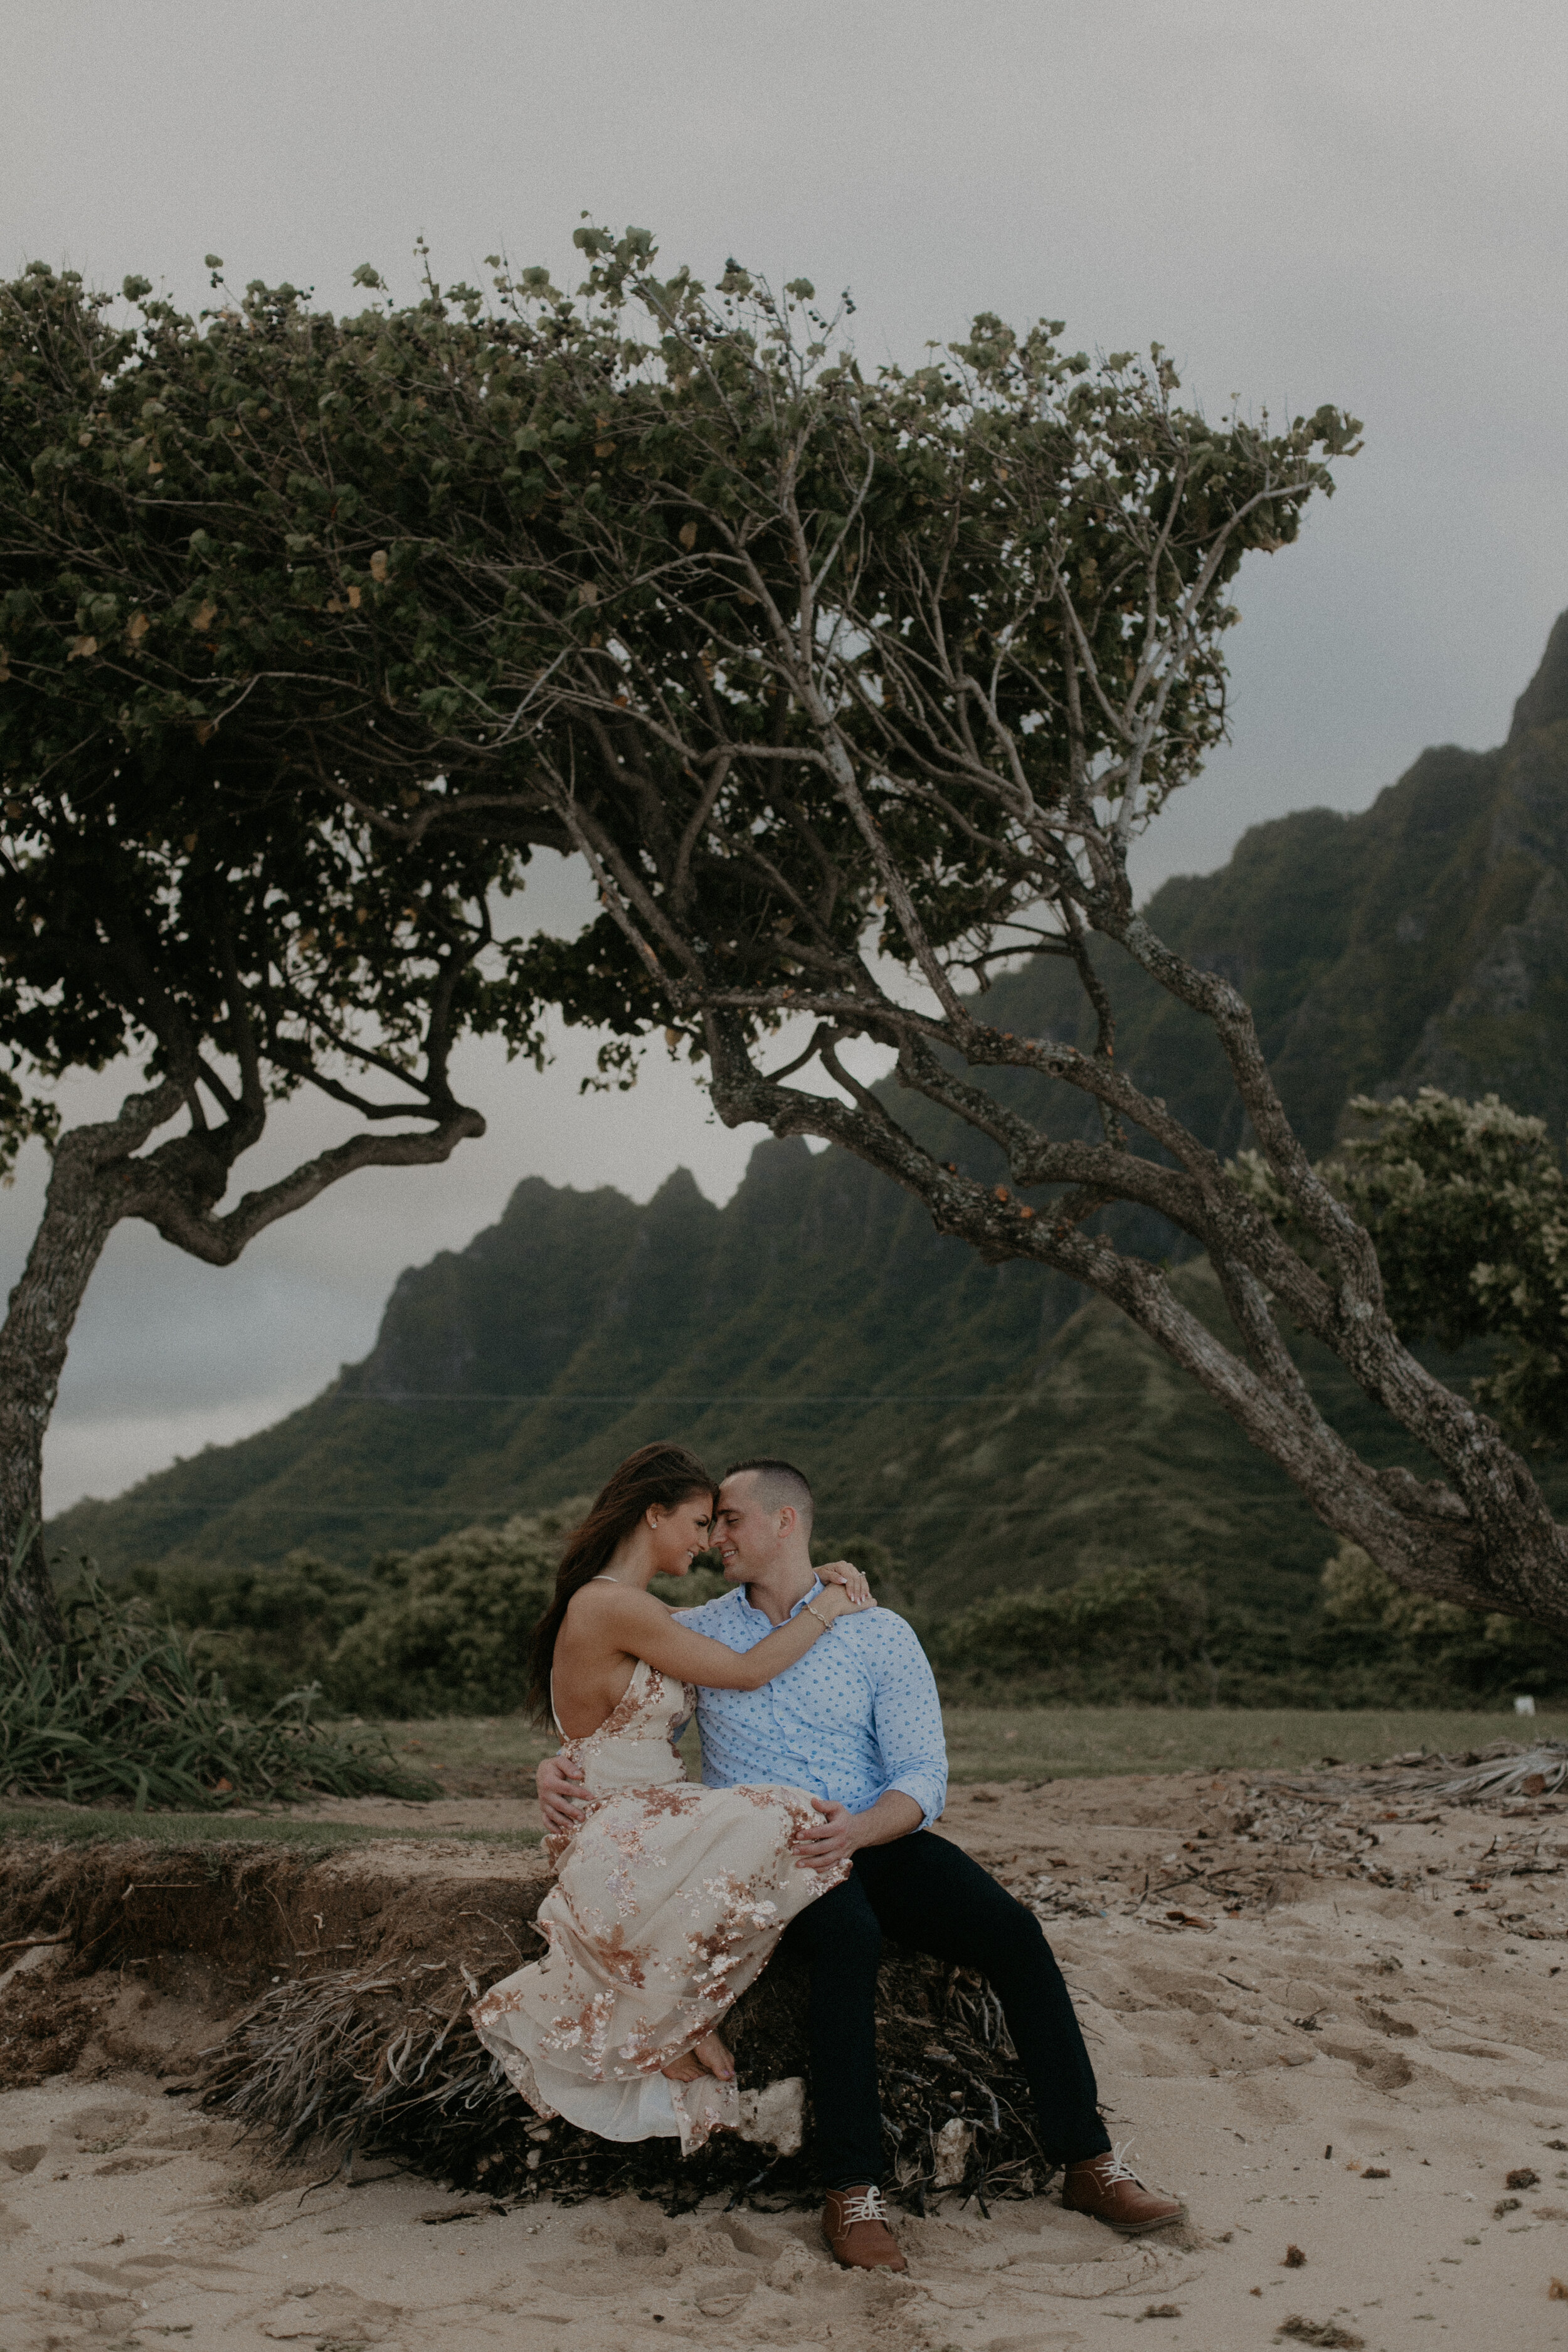  Oahu Engagement Session. Oahu Hawaii Couple Engagement Photoshoot. Tropical Engagement Session. Oahu Hawaii. Engagement Session. Couple Photos. Adventurous Couple. Adventurous Engagement Session. Wedding Photographer. Engagement Photographer. Authen